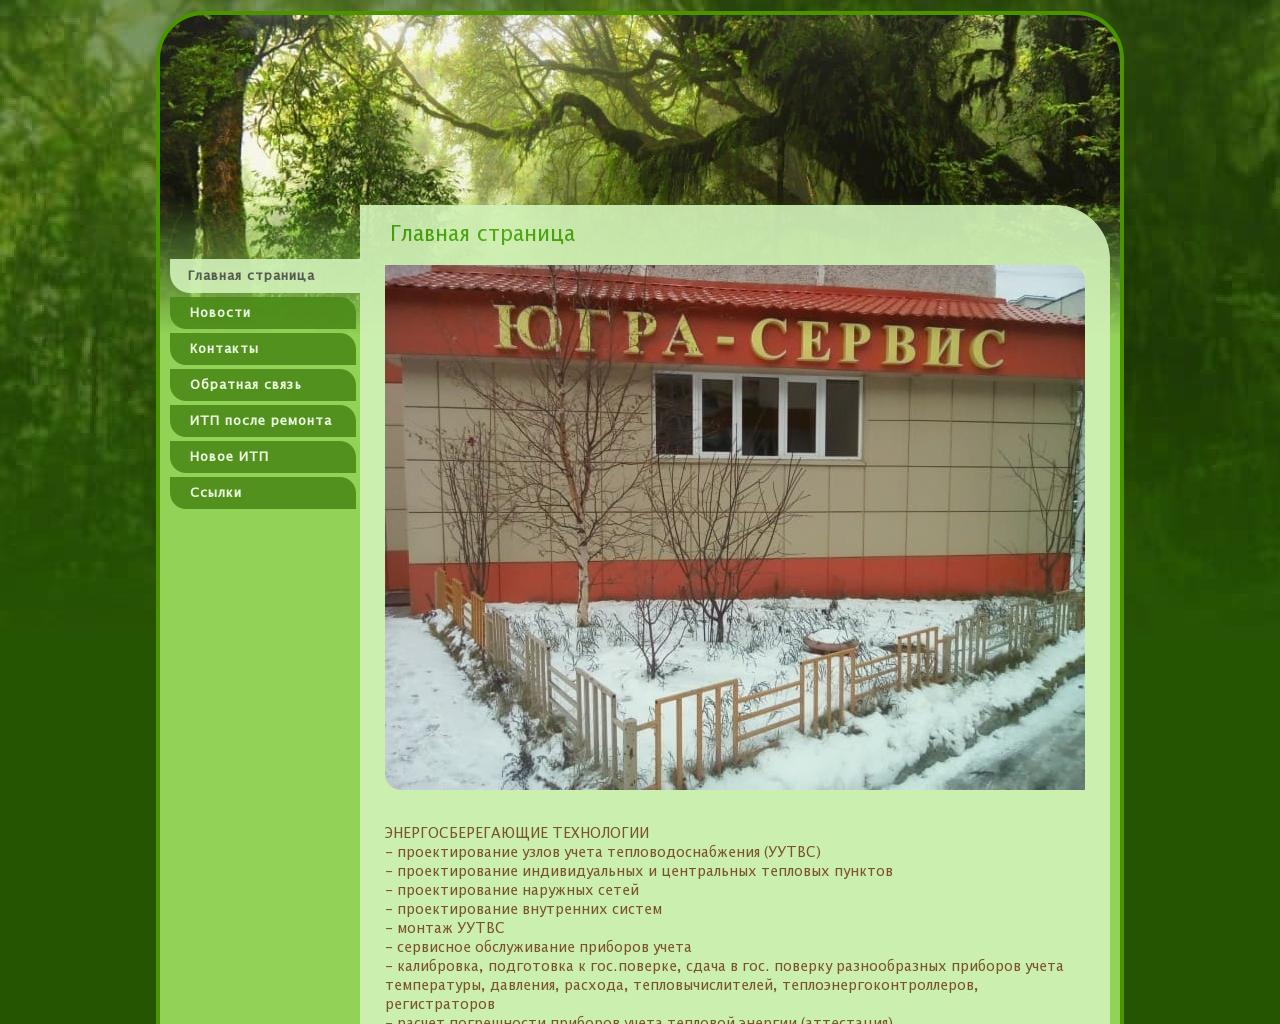 Изображение сайта ugra-servis.ru в разрешении 1280x1024